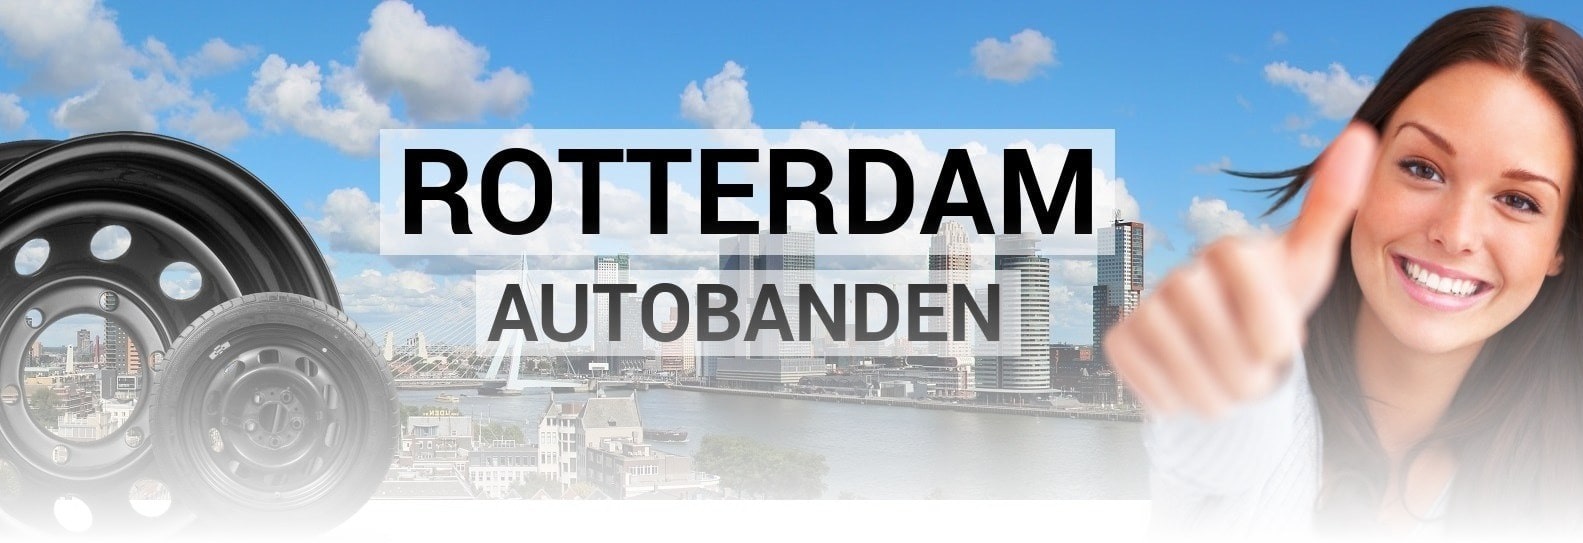 Rotterdam autobanden